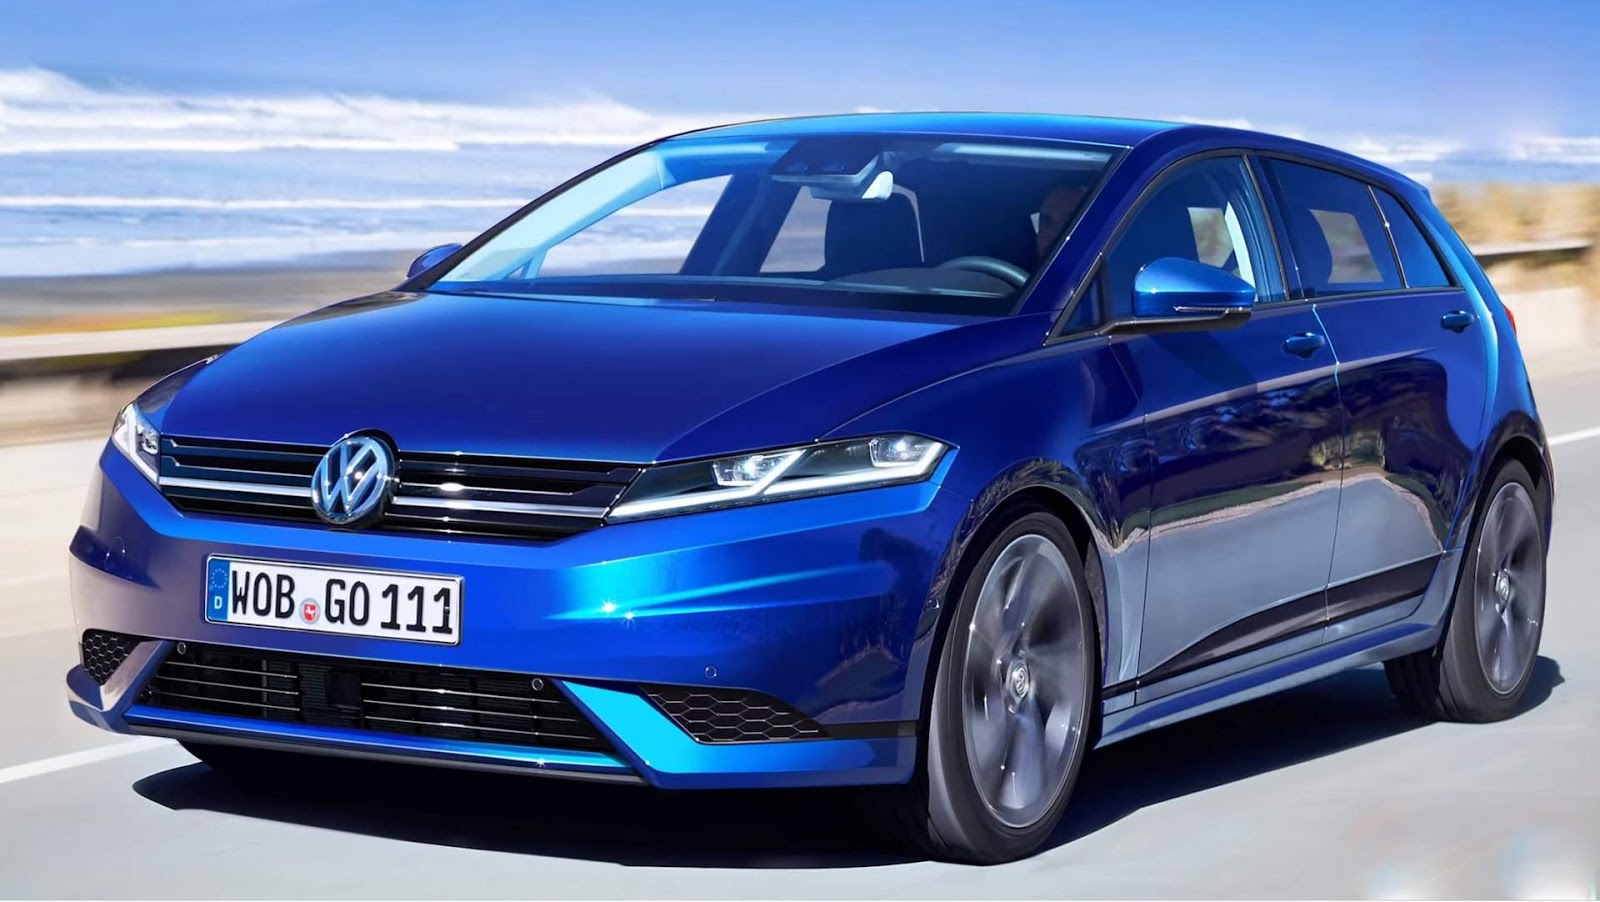 VW Golf 2021: změny, ceny, automobilový průmysl a fotografie, Autobrezik